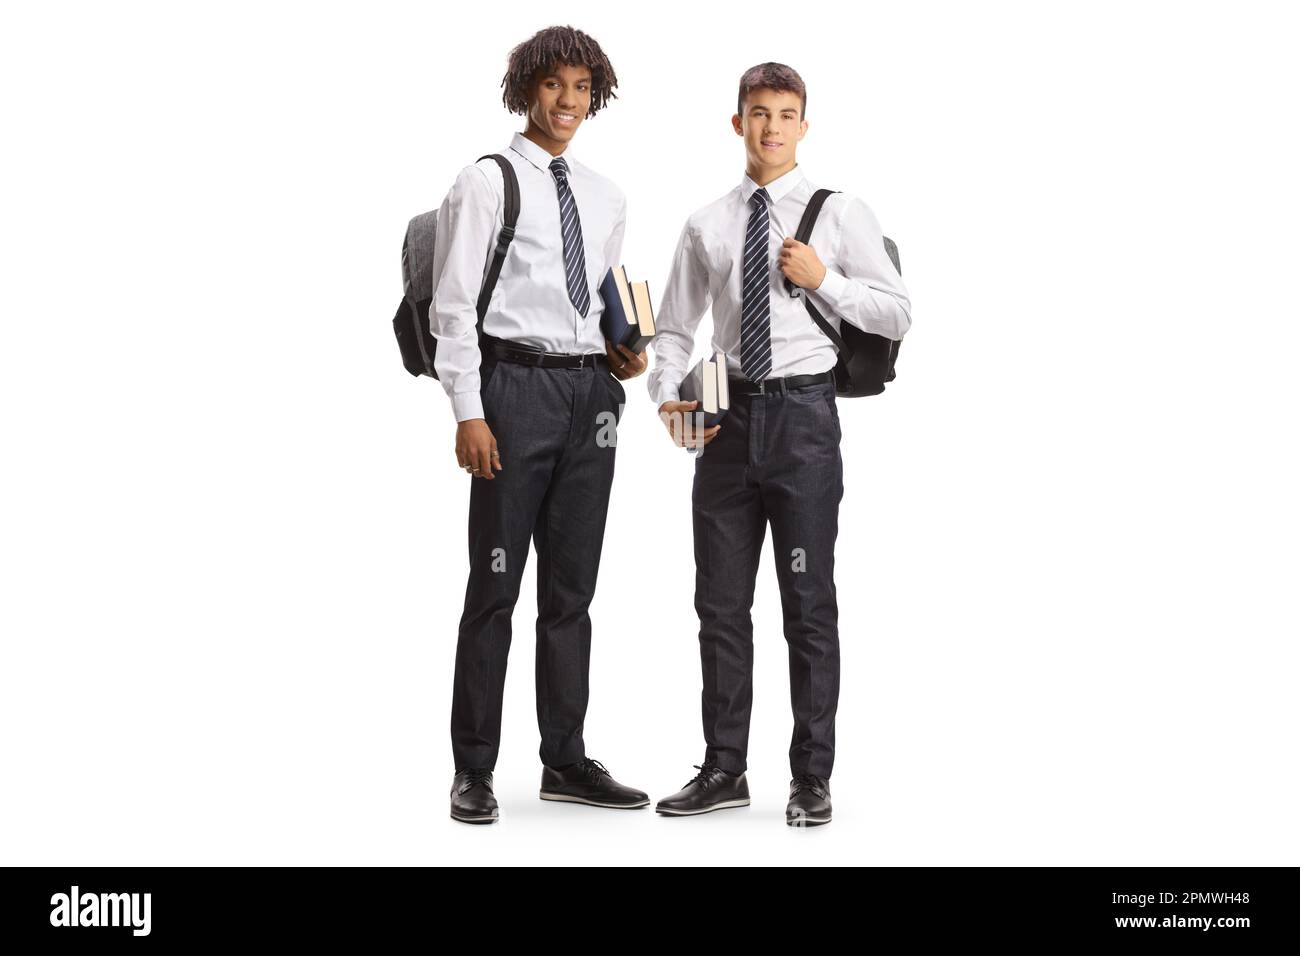 Studente maschio afro-americano e caucasico in uniformi che trasportano zaini e posano isolati su sfondo bianco Foto Stock